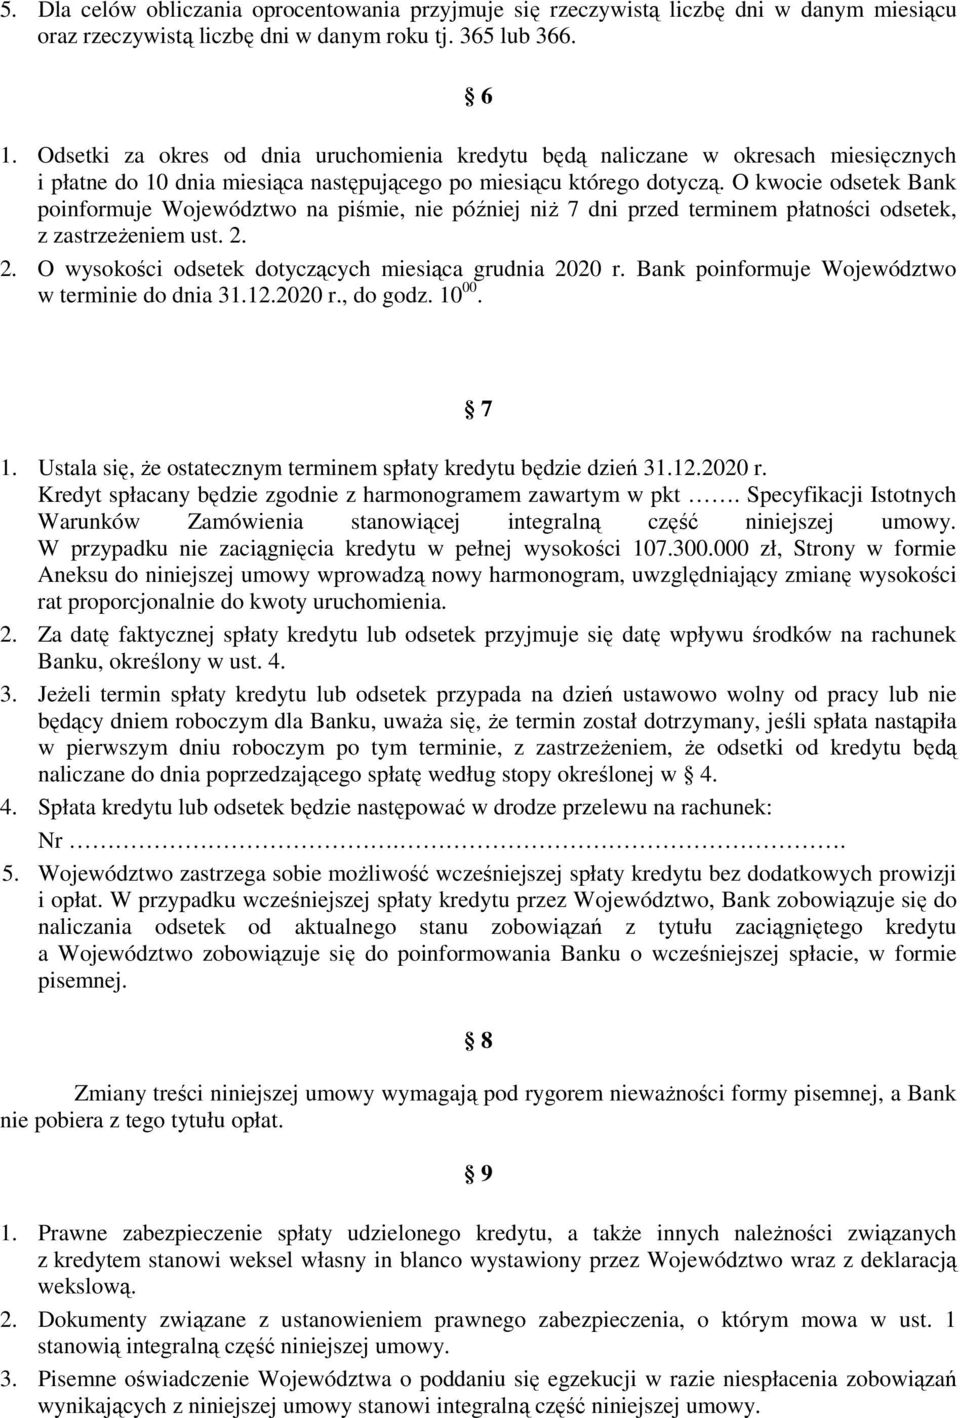 O kwocie odsetek Bank poinformuje Województwo na piśmie, nie później niŝ 7 dni przed terminem płatności odsetek, z zastrzeŝeniem ust. 2. 2. O wysokości odsetek dotyczących miesiąca grudnia 2020 r.